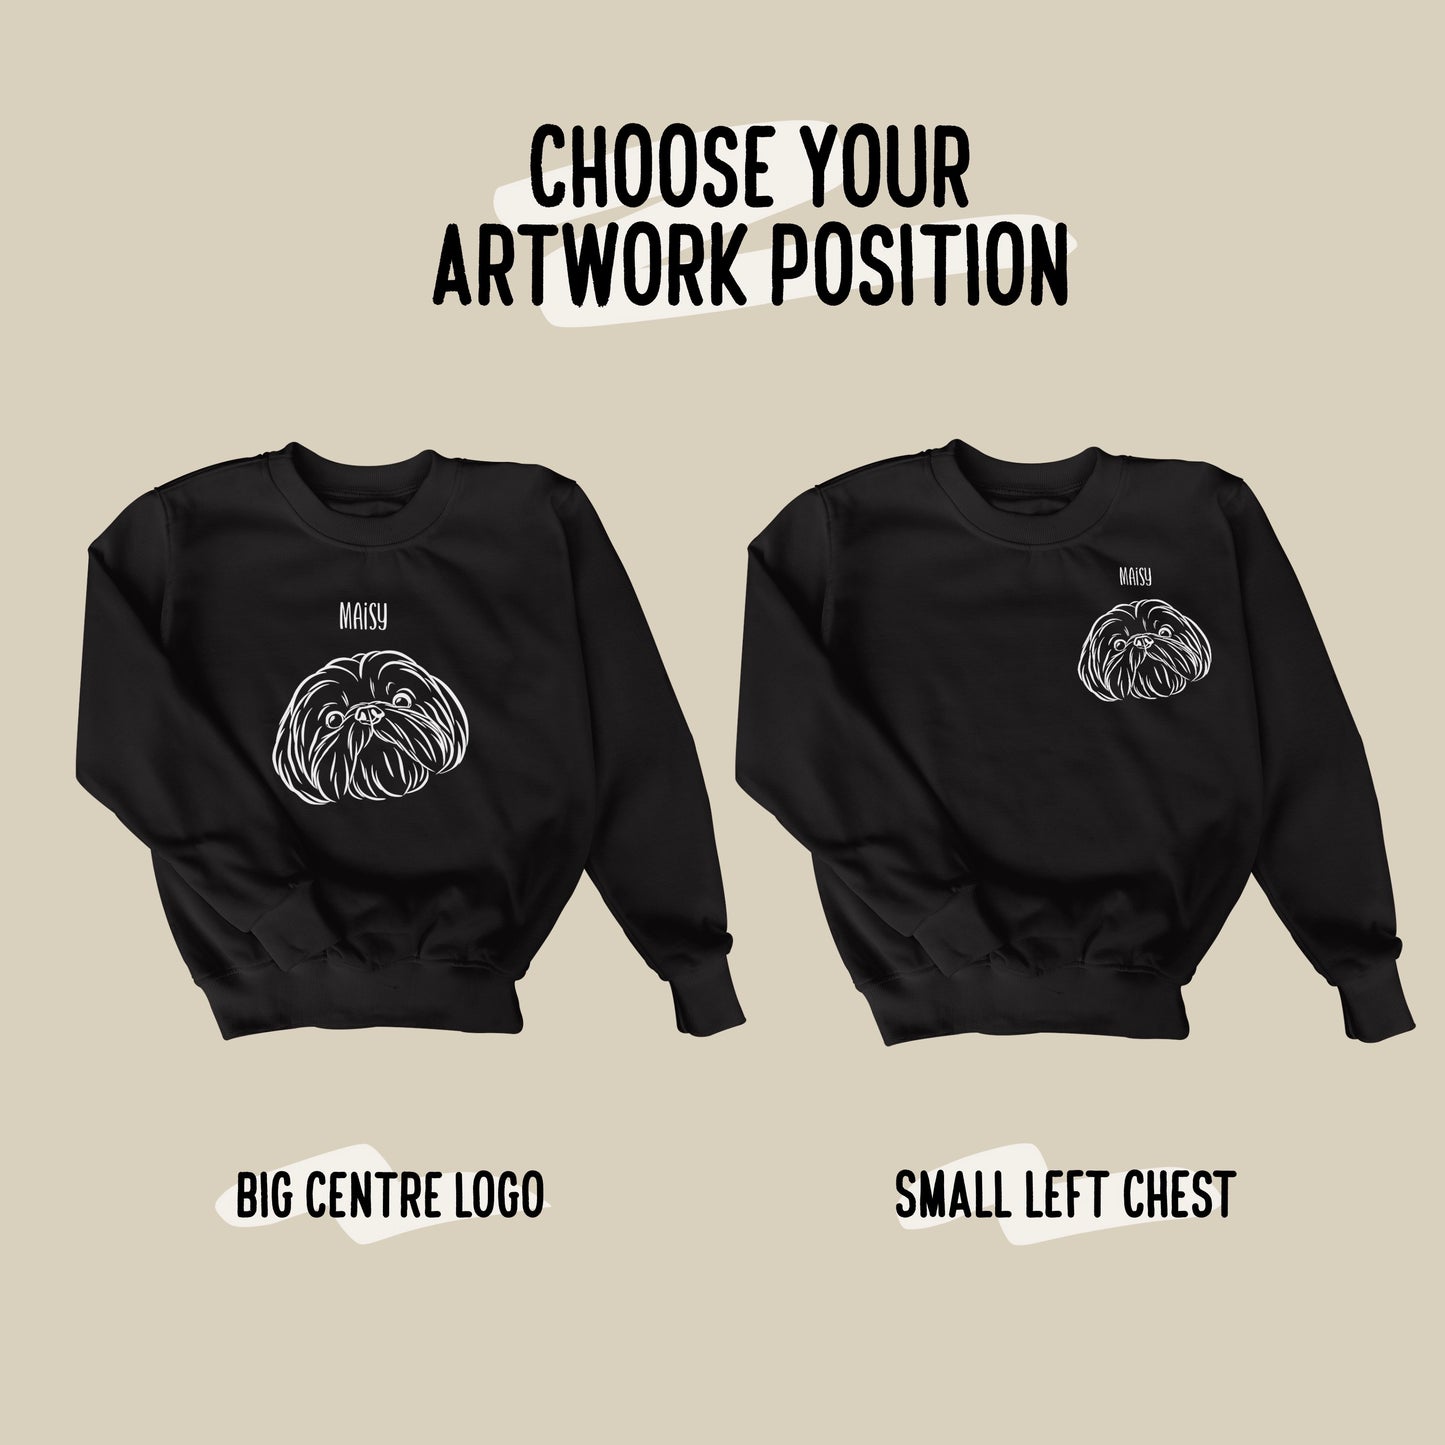 Outline Pet Portrait Sweatshirt (Black)